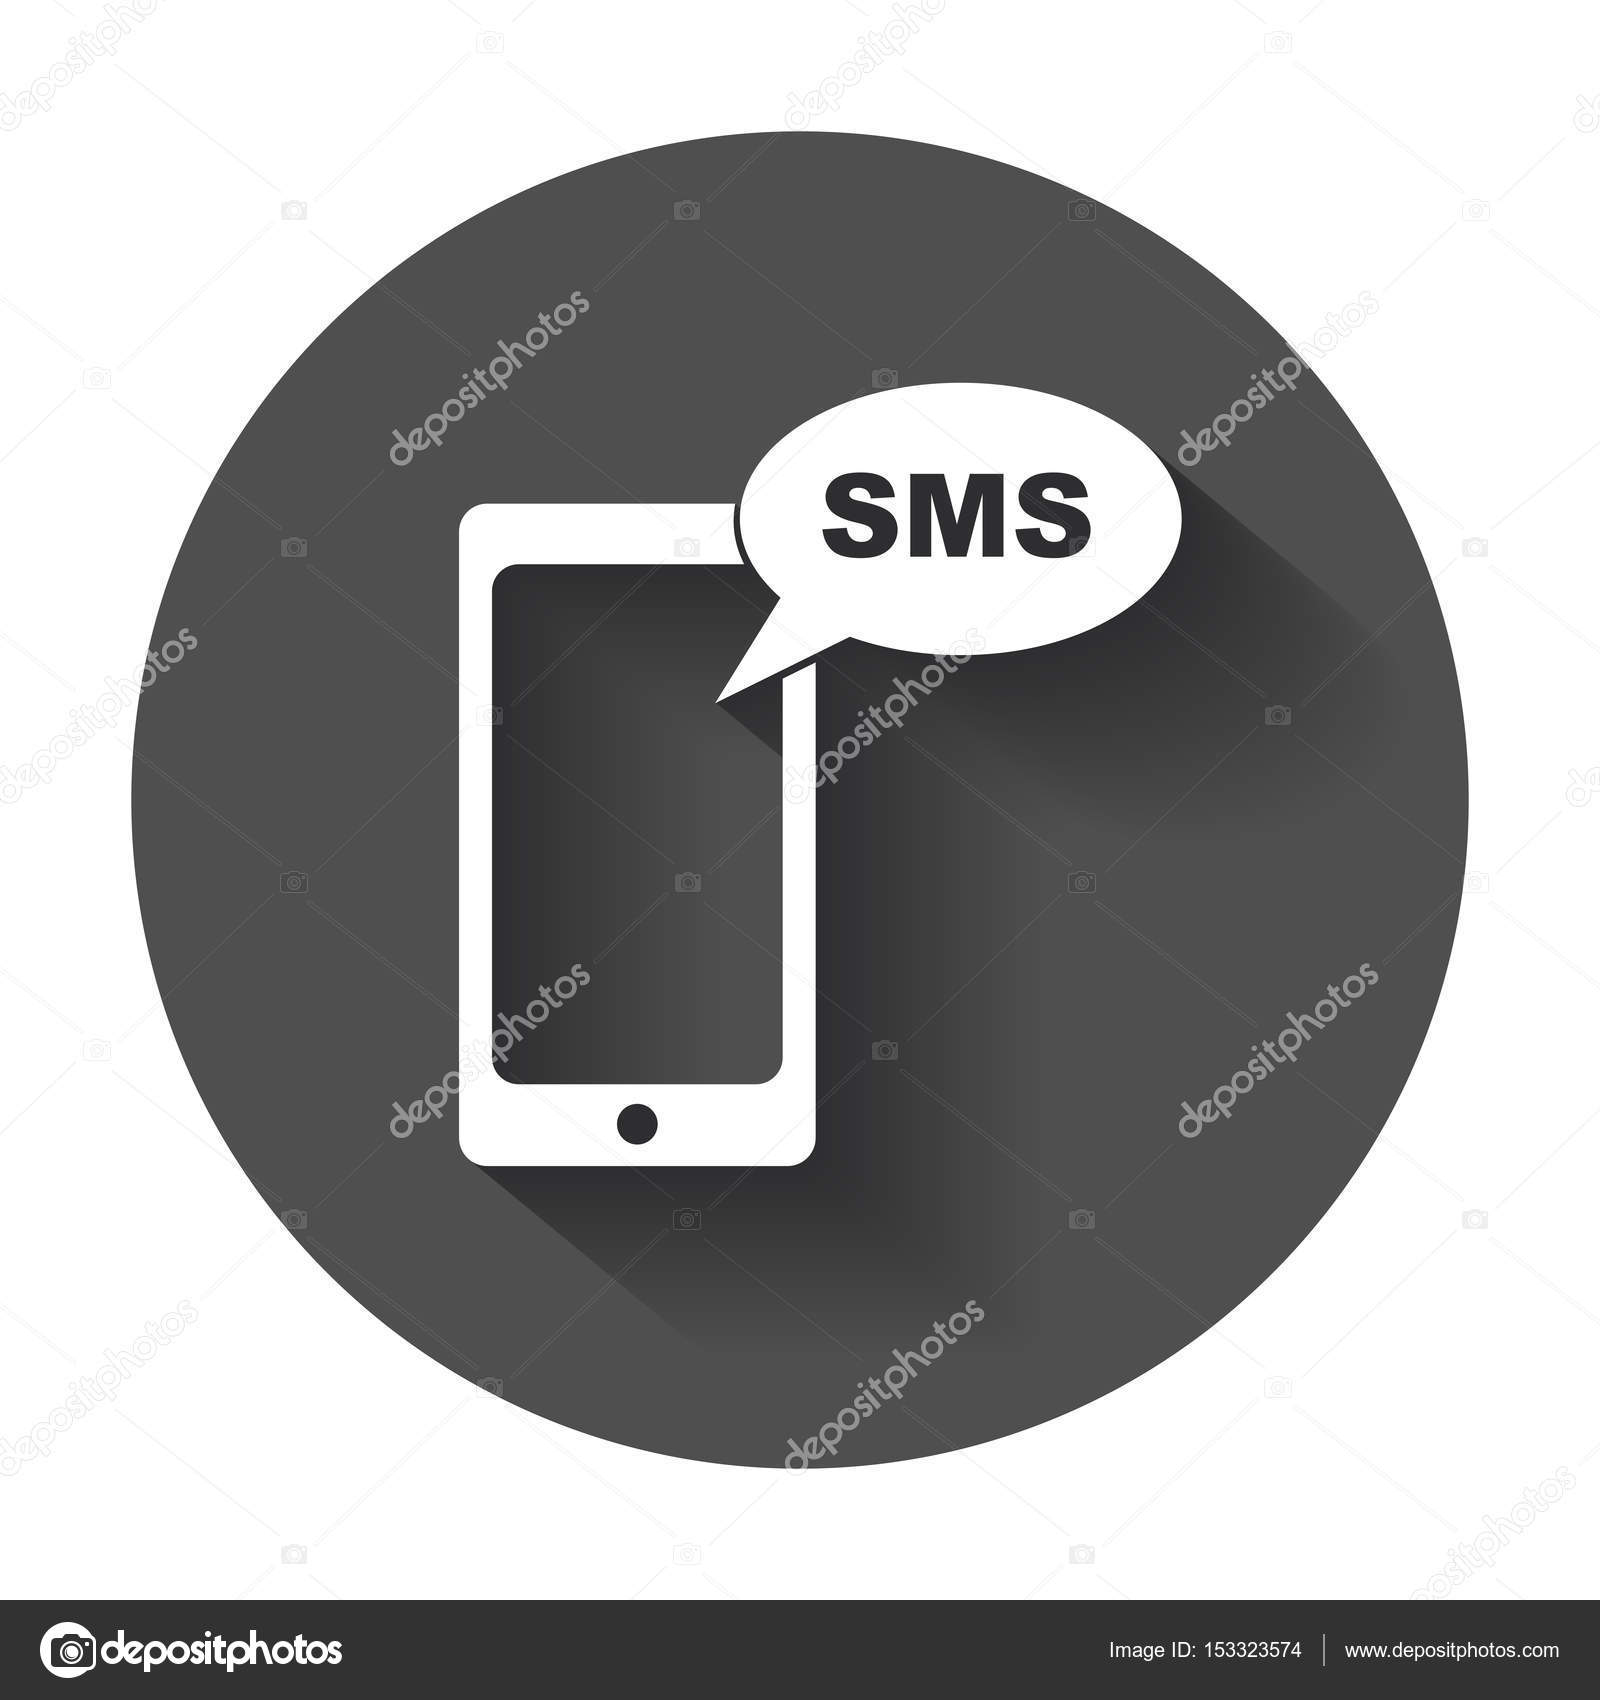 Flaches Smartphone-Symbol. SMS-Nachricht. Telefon mit langem